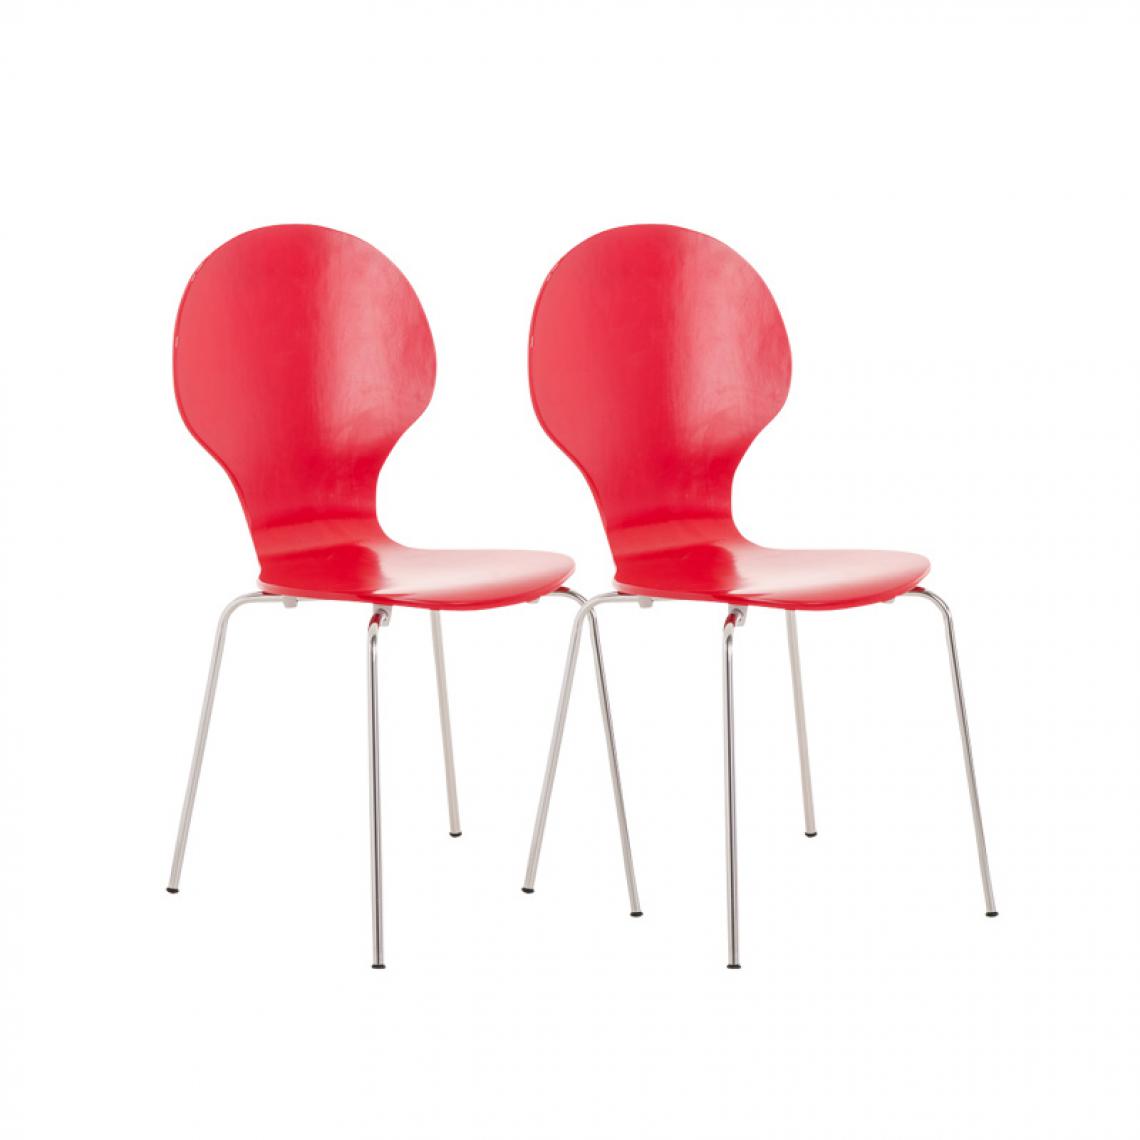 Icaverne - Splendide Lot de 2 chaises visiteurs Vaduz couleur rouge - Chaises